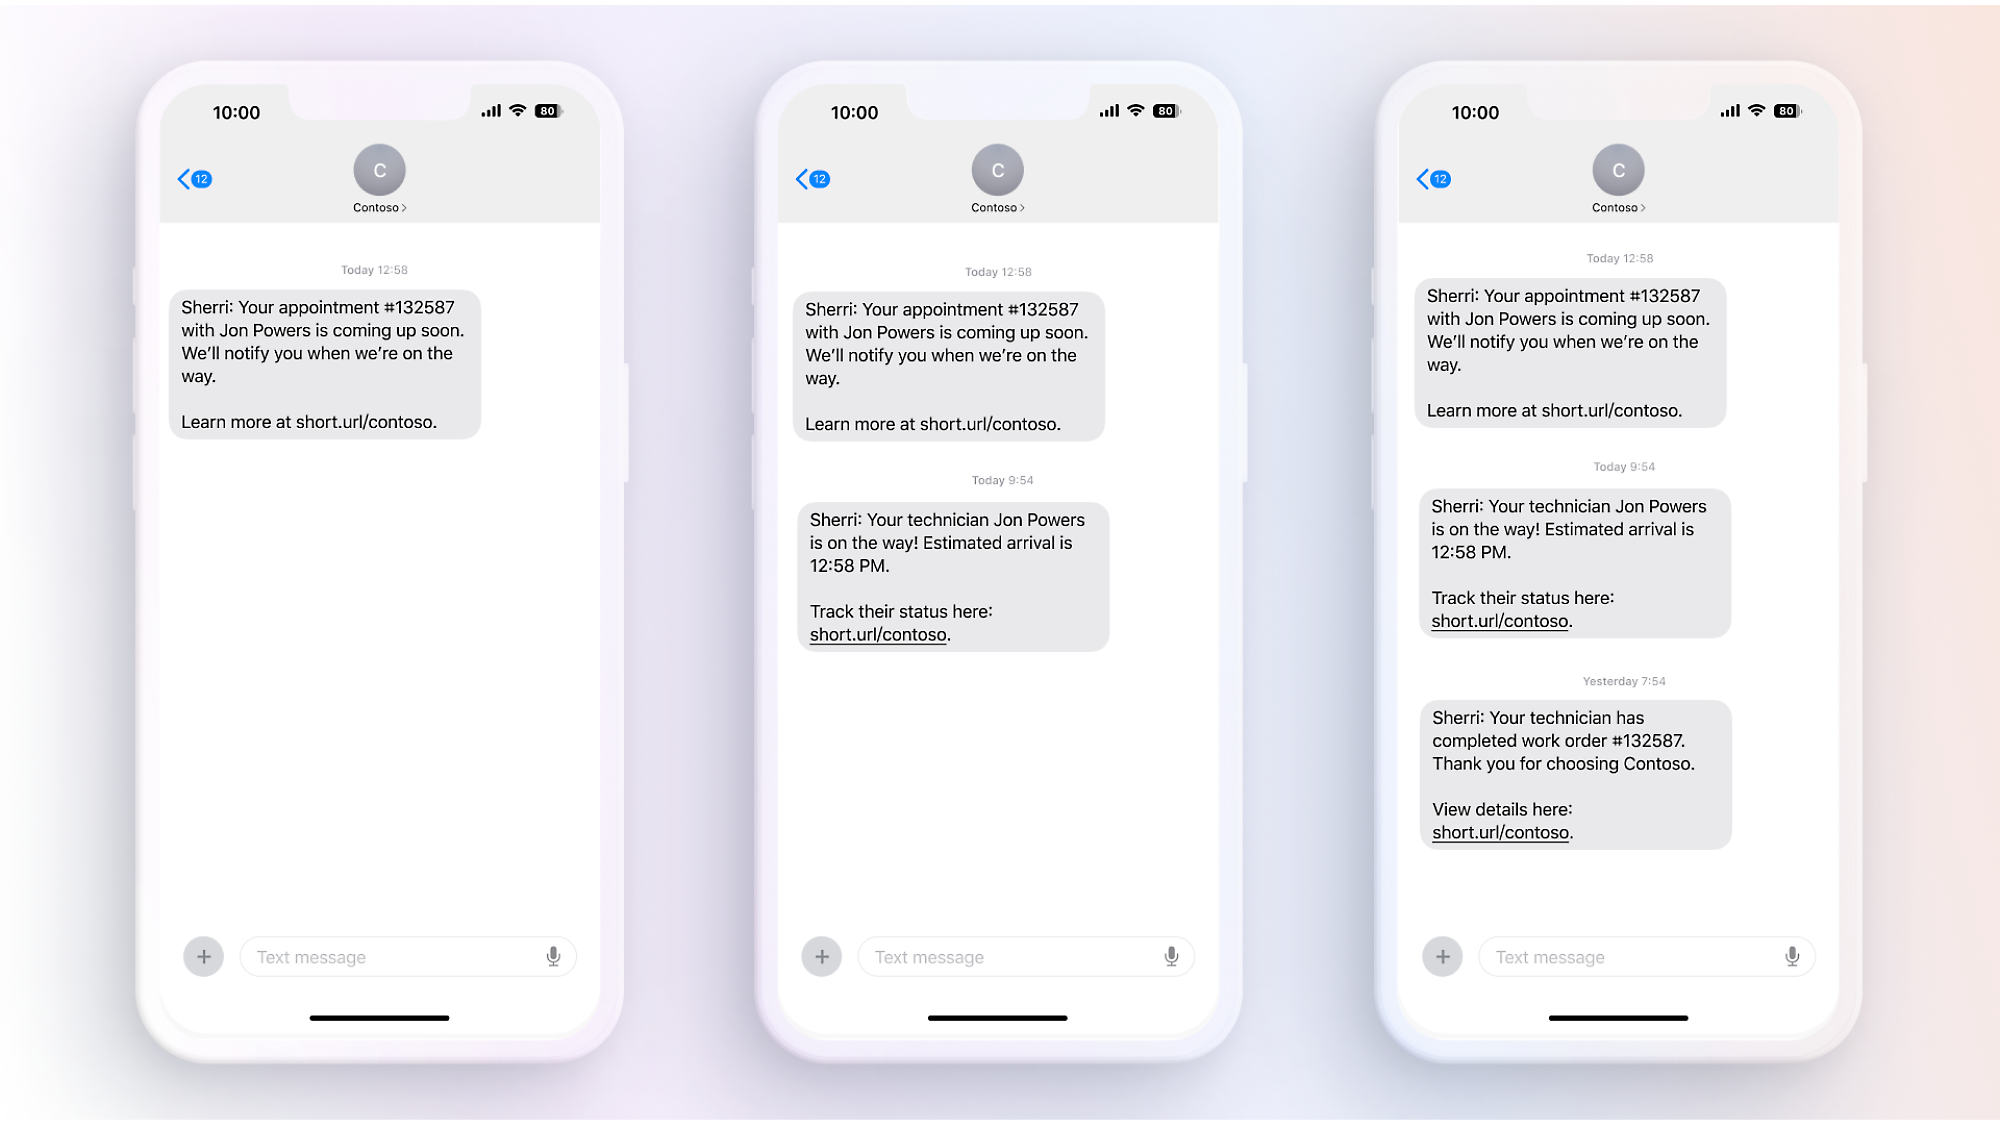 テキスト メッセージが表示された 3 枚の iPhone のスクリーンショット。